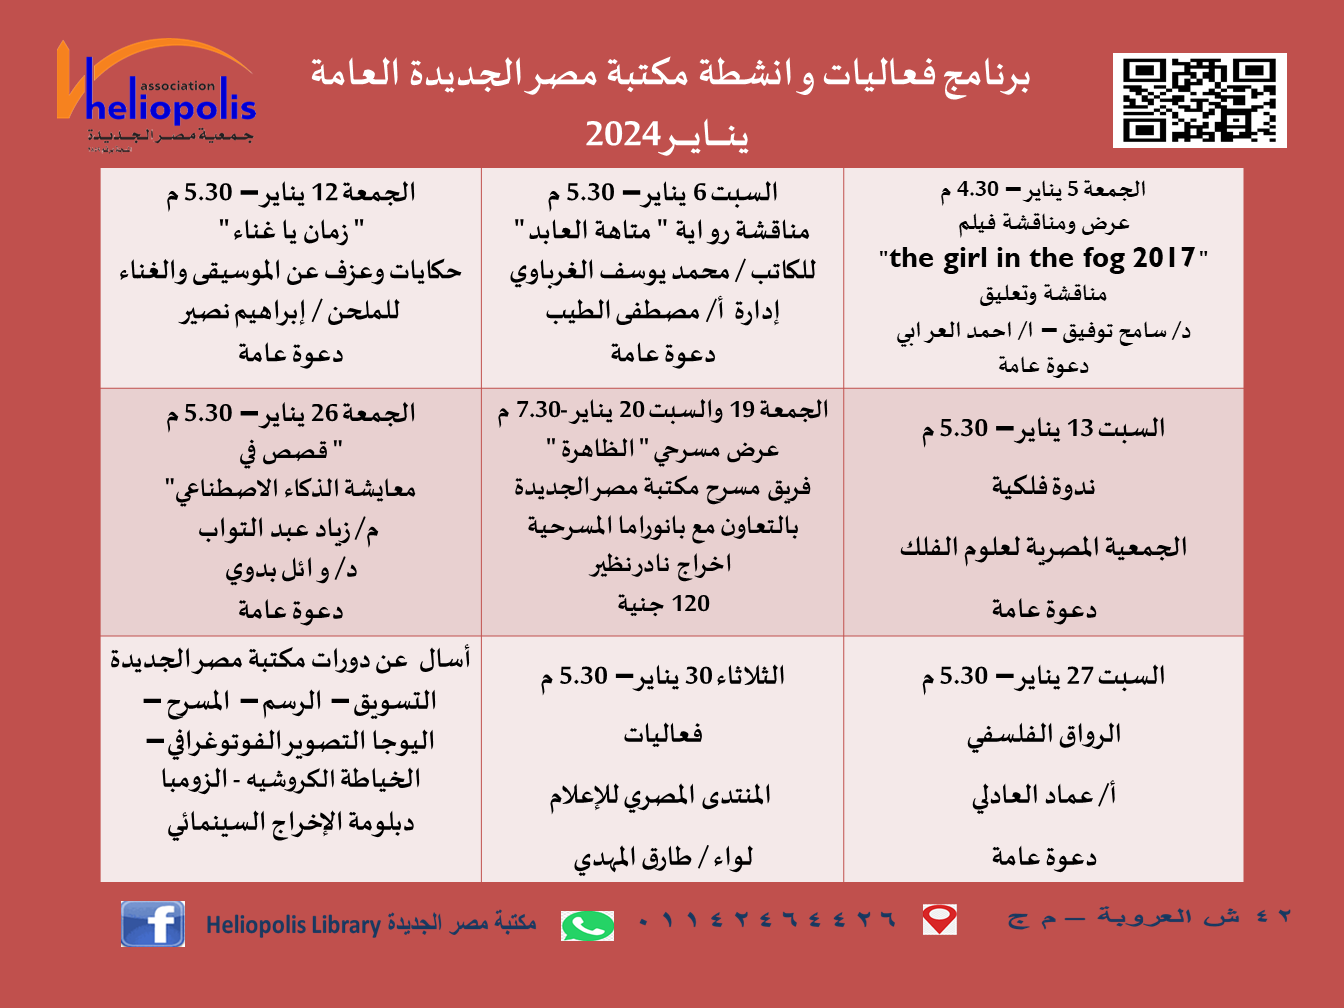 فعاليات مكتبة مصر الجديدة العامة لشهر يناير 2024